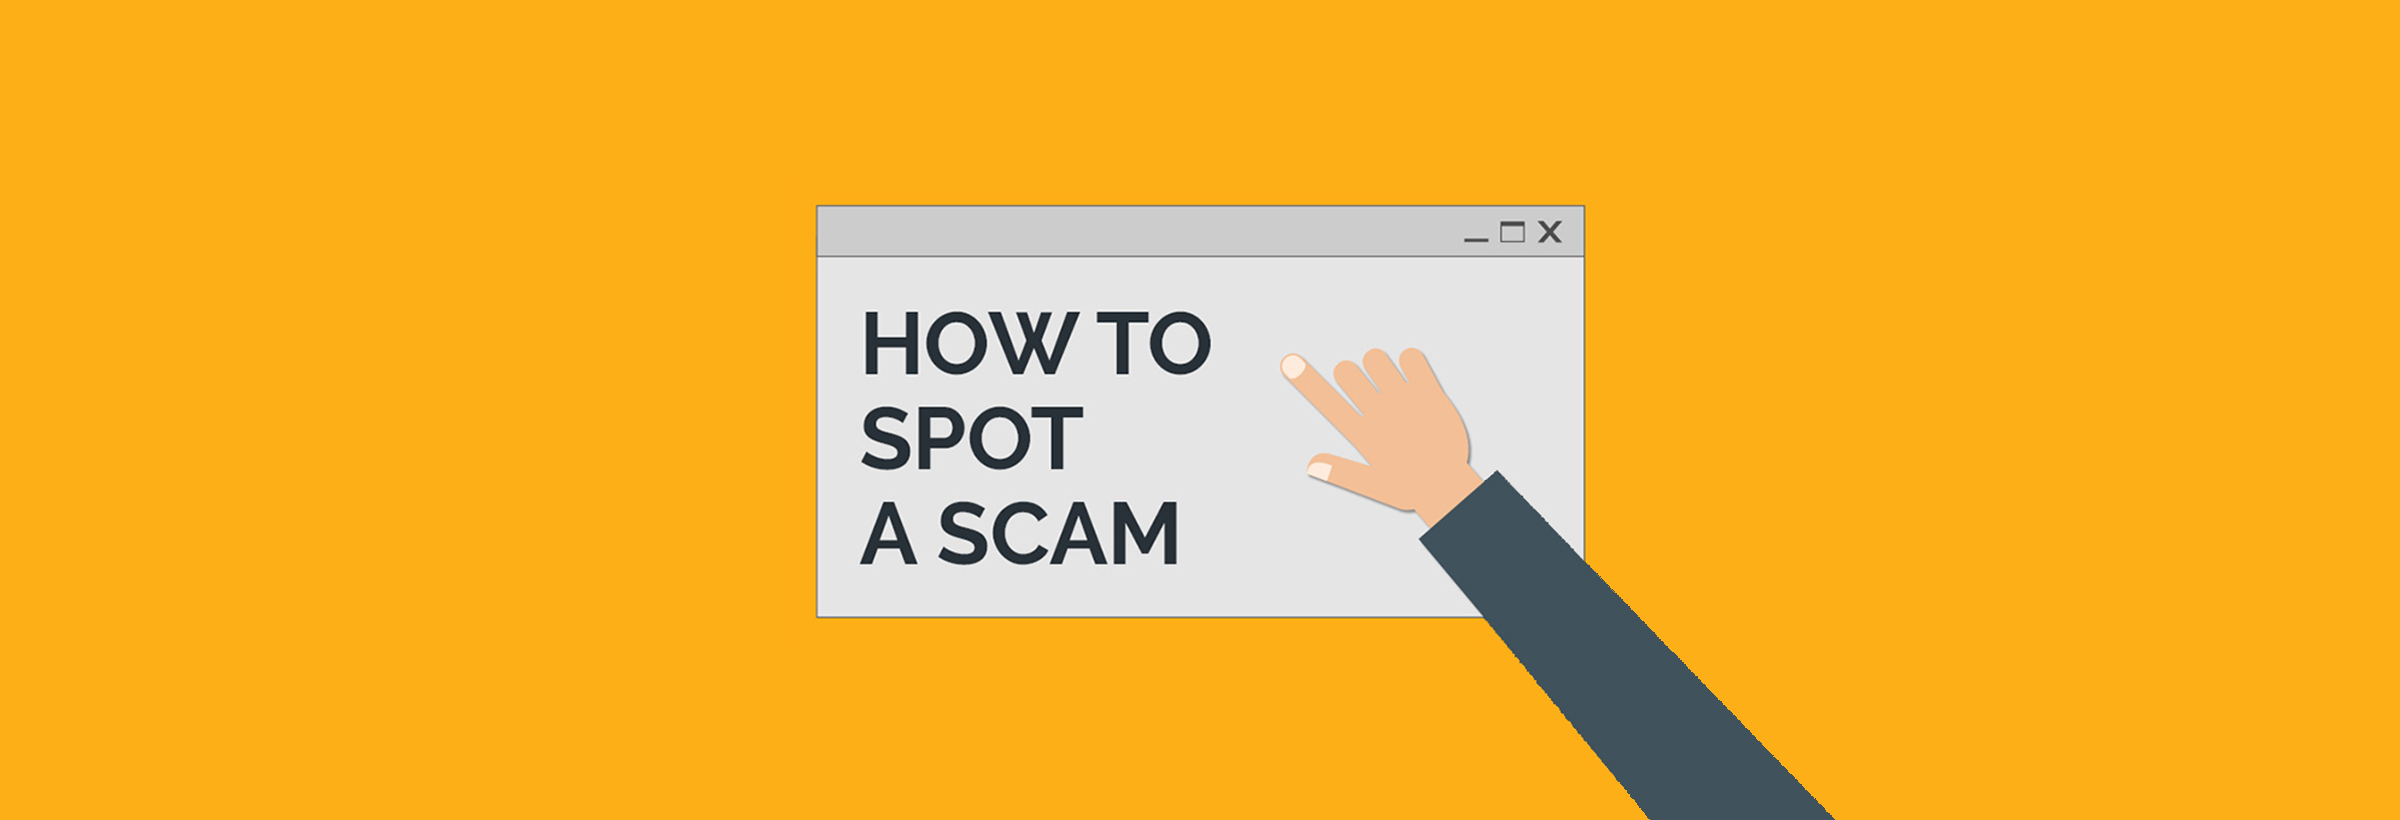 how-to-spot-a-scam-2400-btsr.jpg